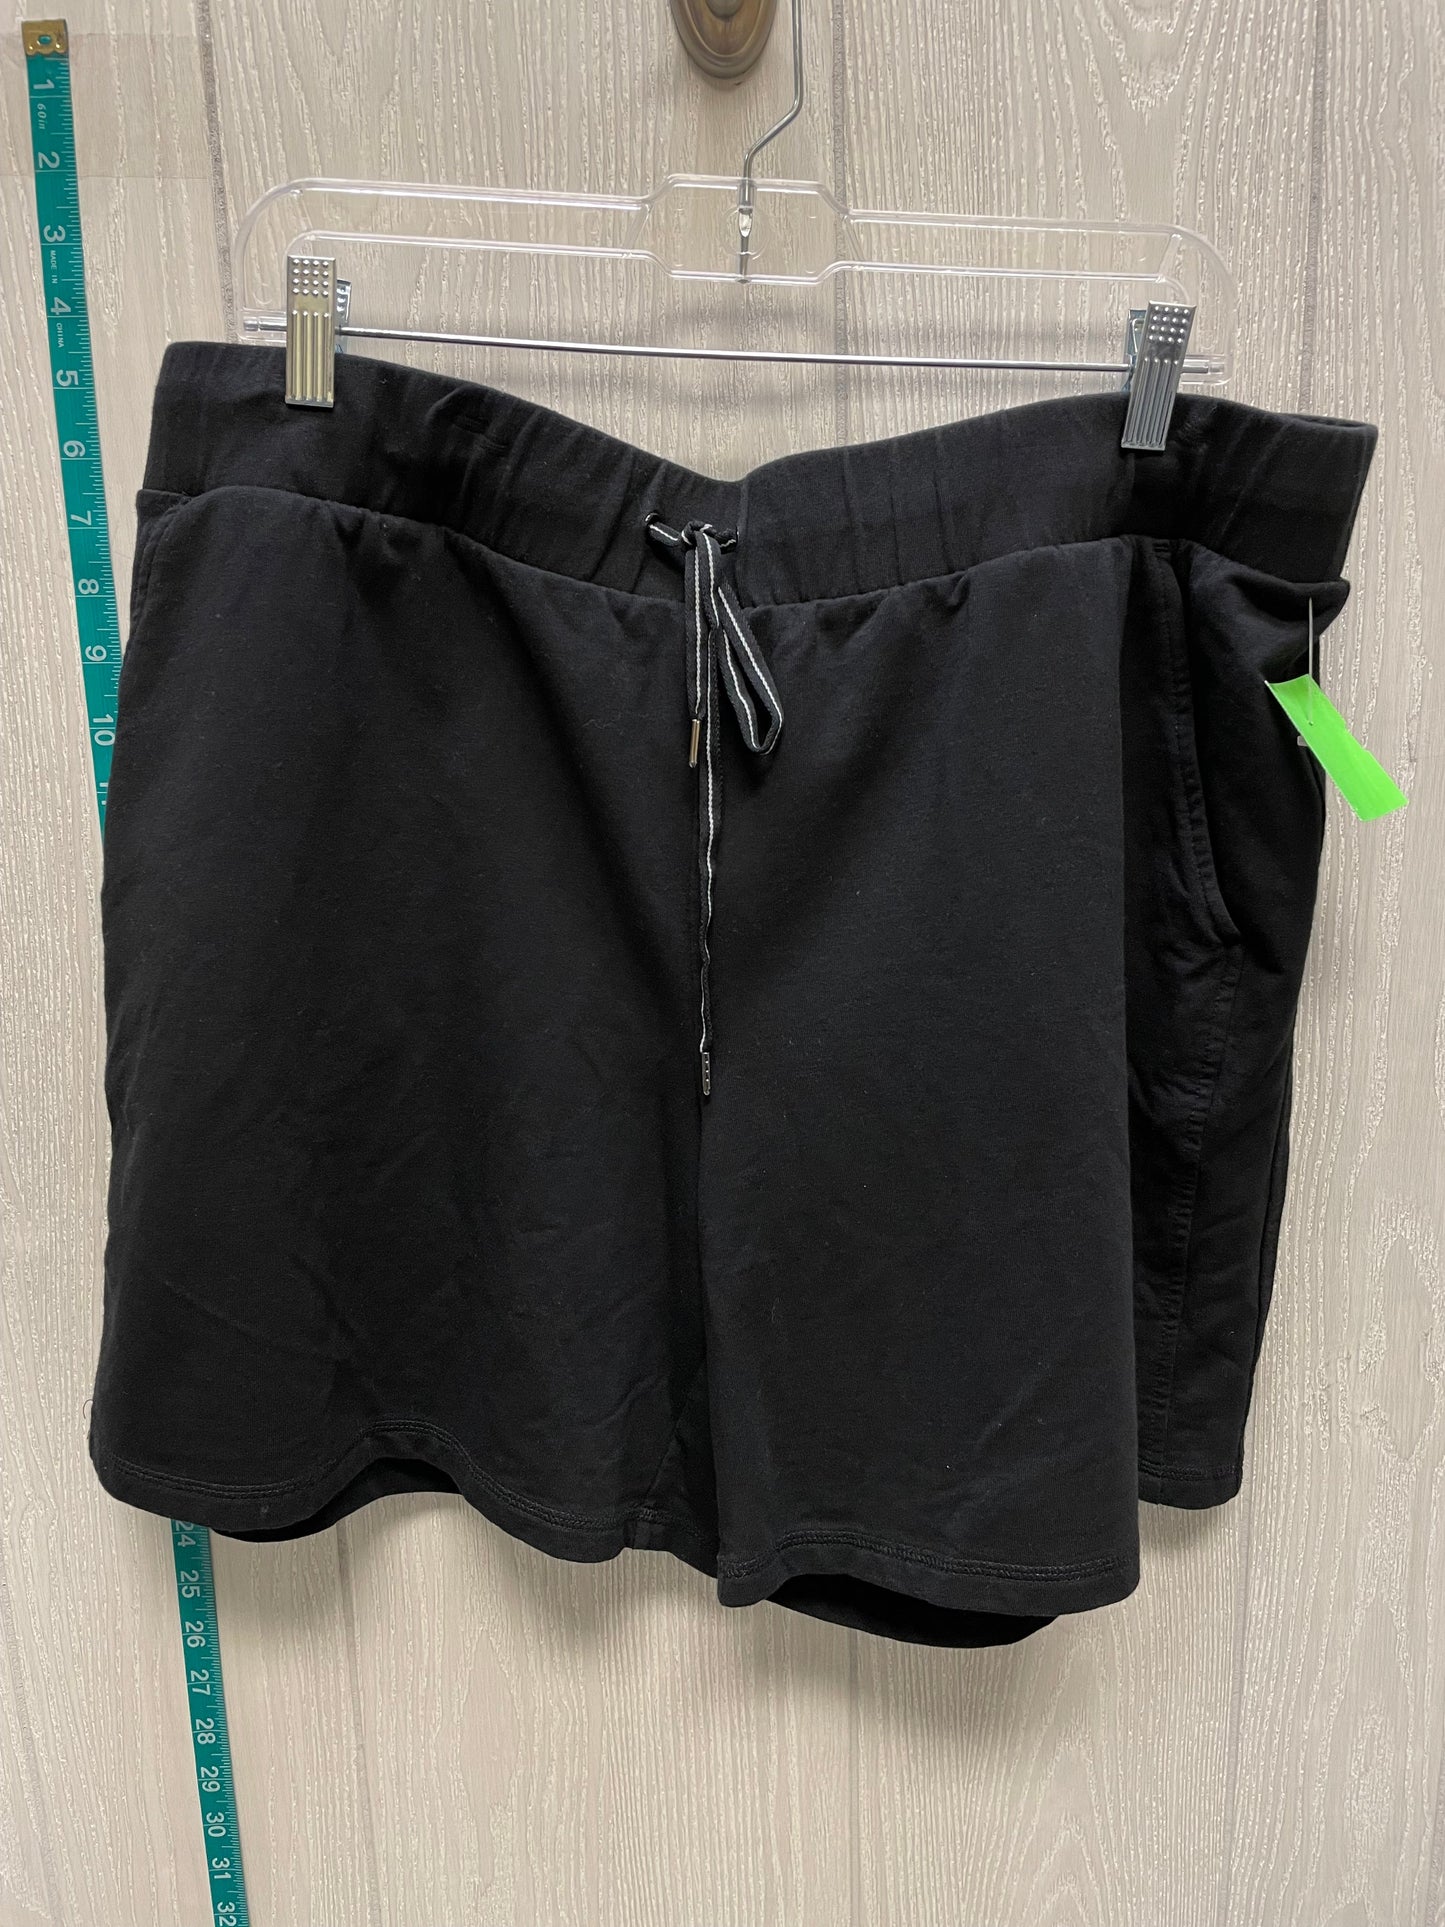 Black Shorts Talbots, Size 2x